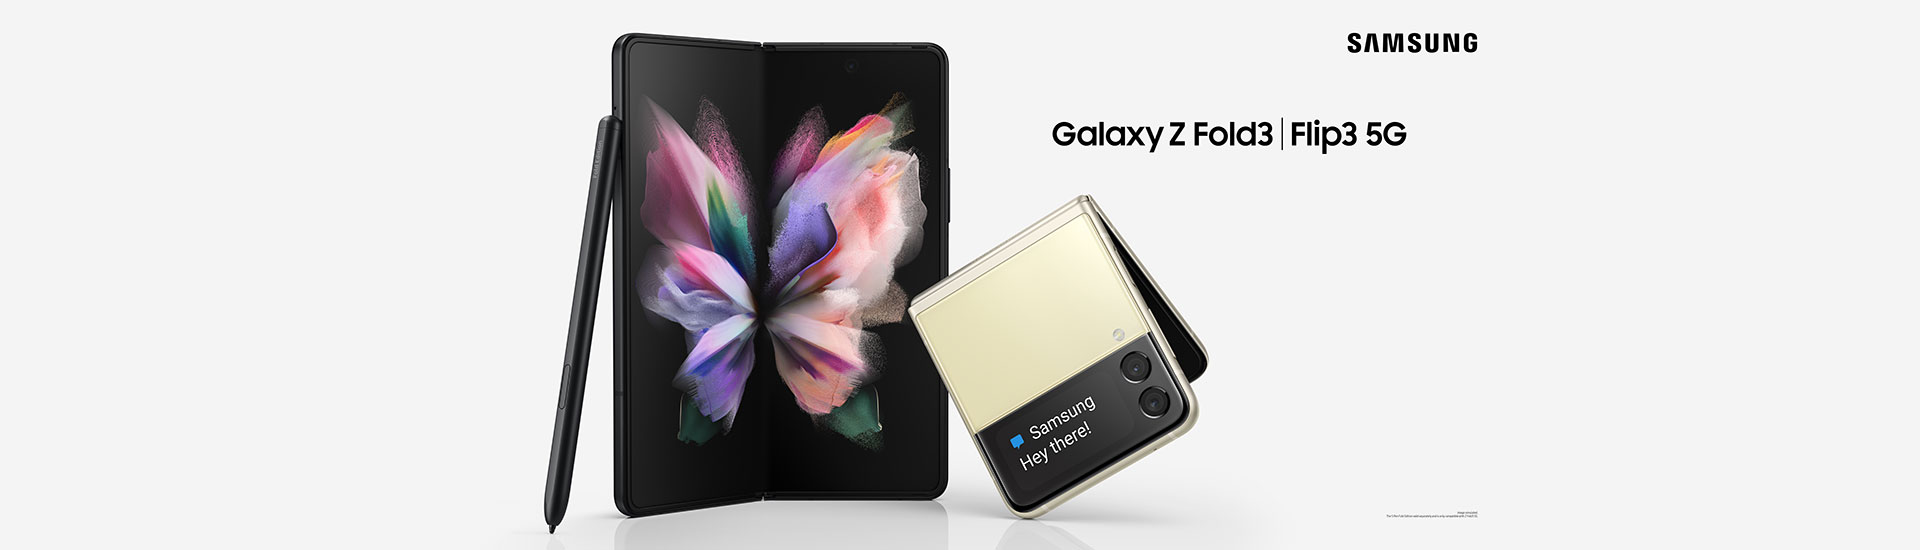 Galaxy Z Fold3 5G 送 (總值 $1,796) 禮遇，Galaxy Z Flip3 5G 送原廠矽膠薄型背蓋 (附指環帶) (價值 $398)，全新5G任用王組合，上台出機即減$7,500.